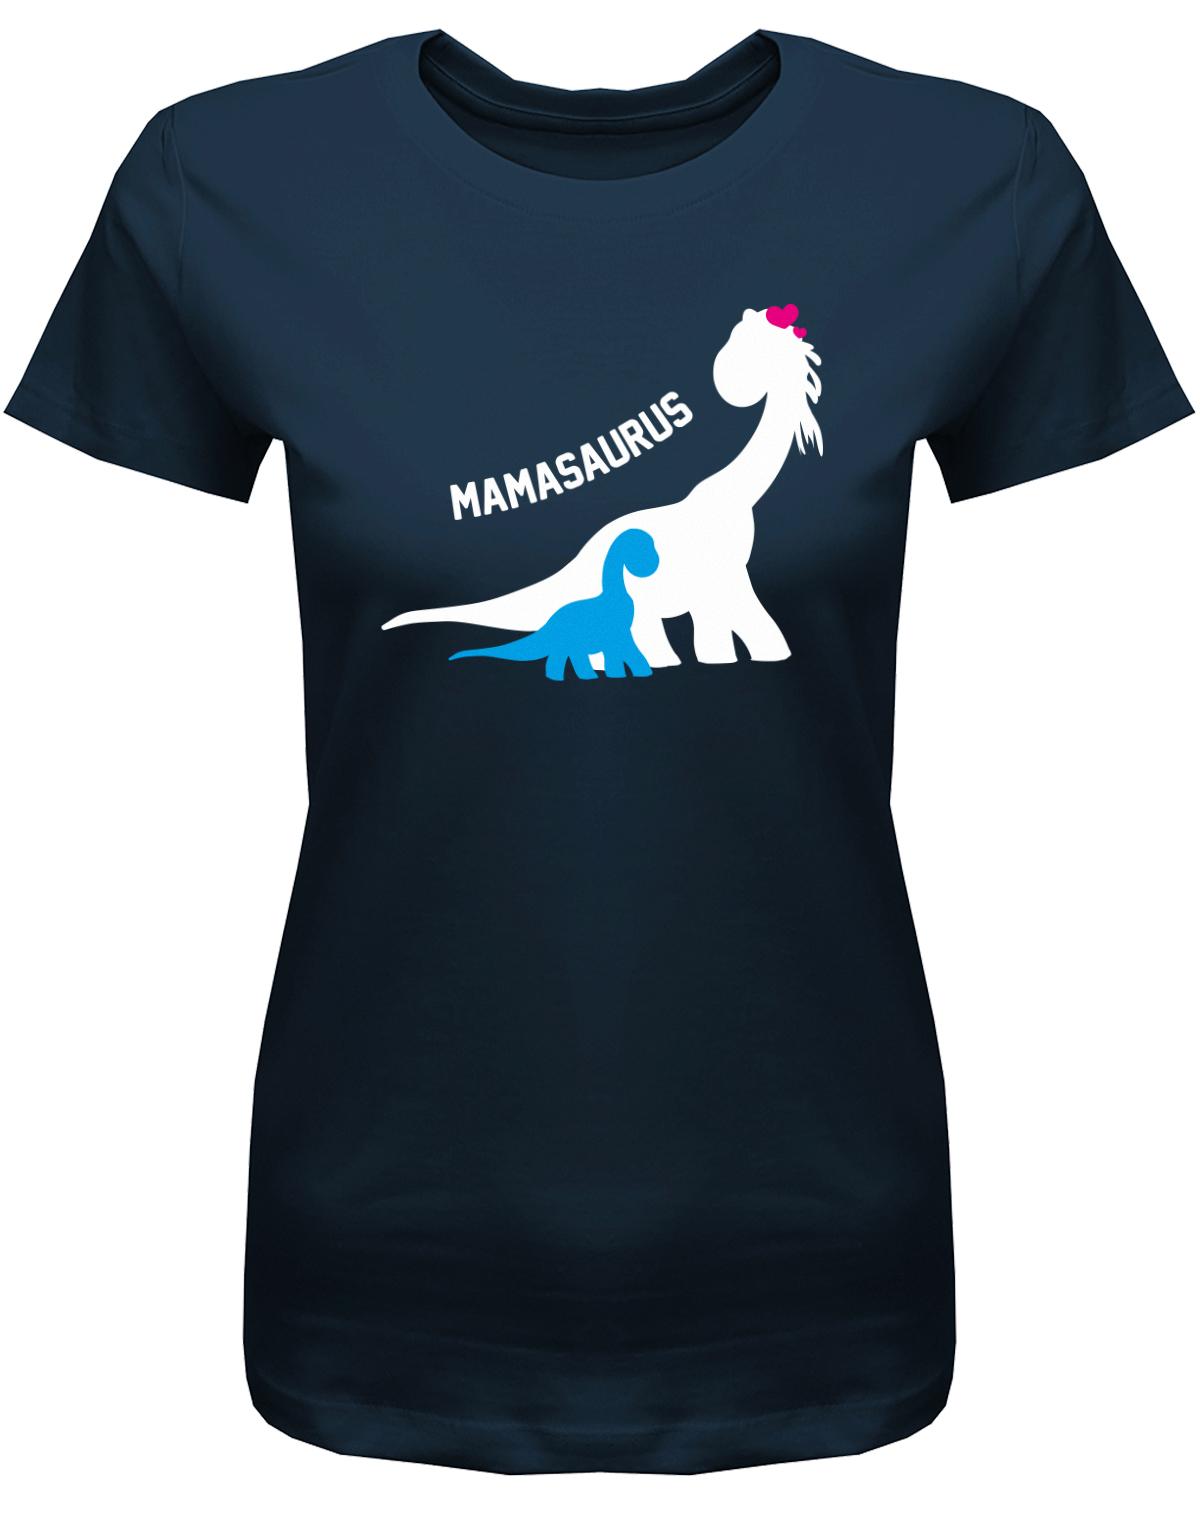 mamasaurus-mama-shirt-Navy